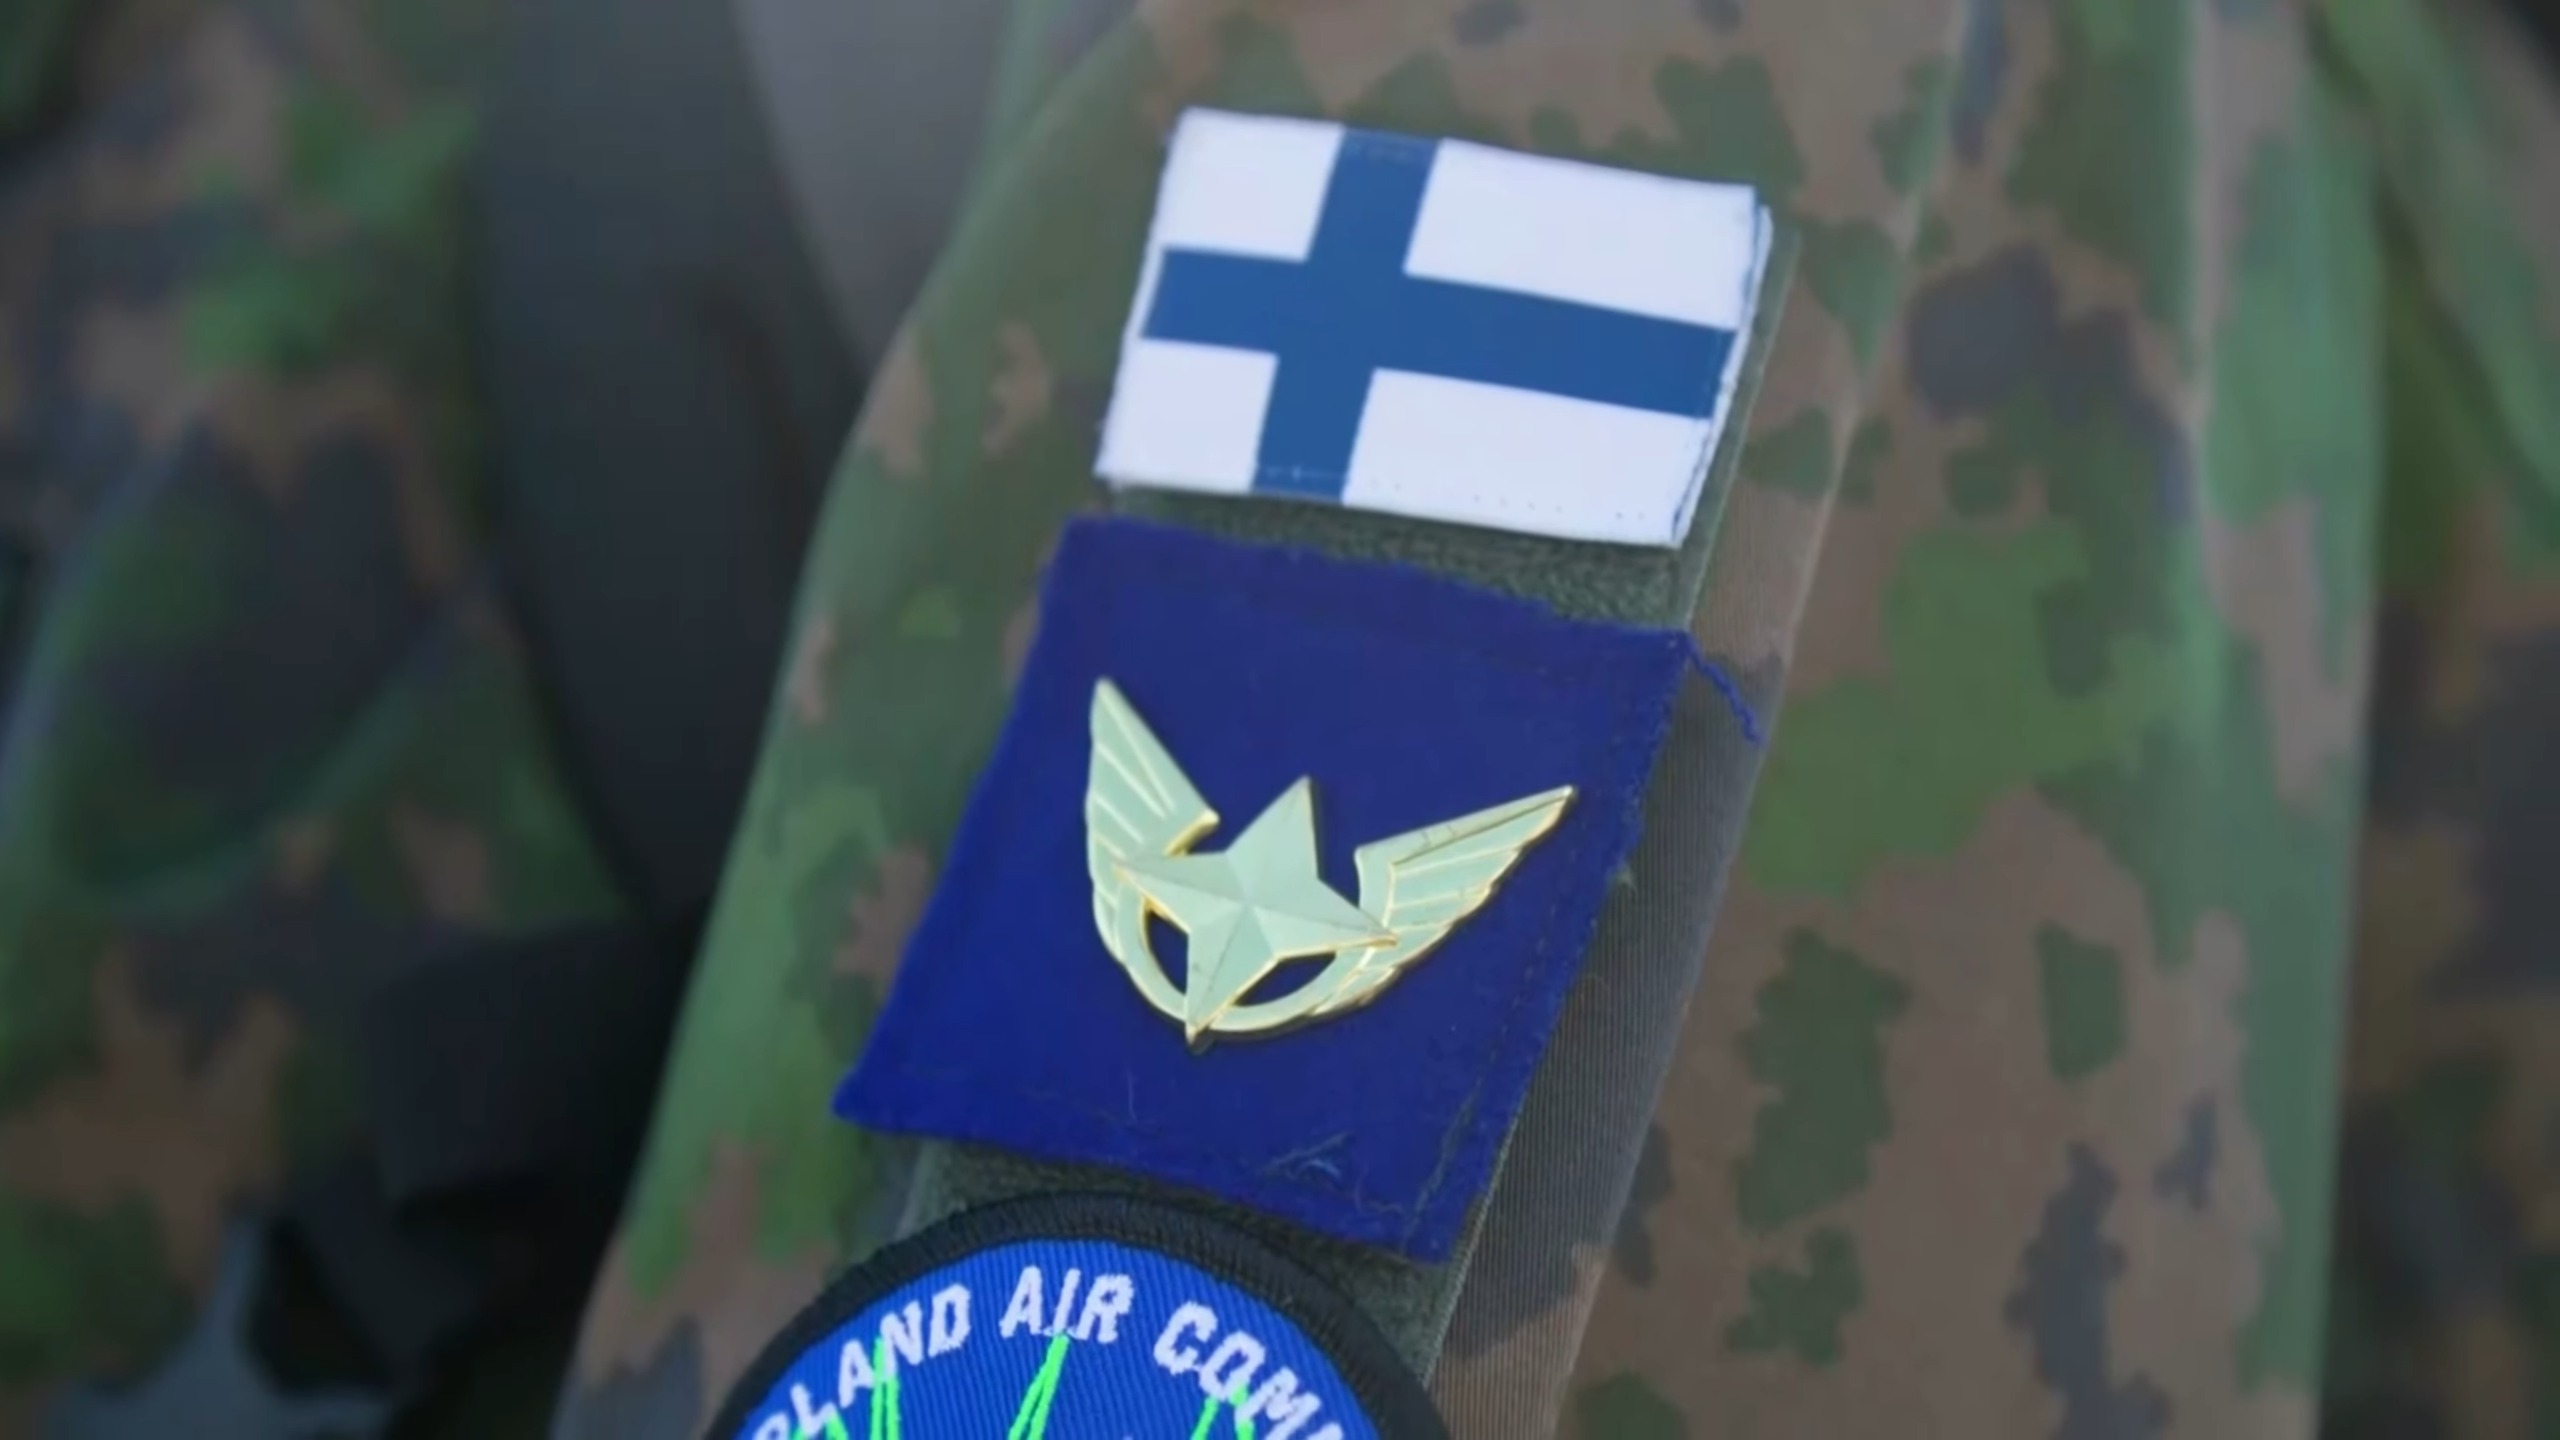 Finland Army- NATO